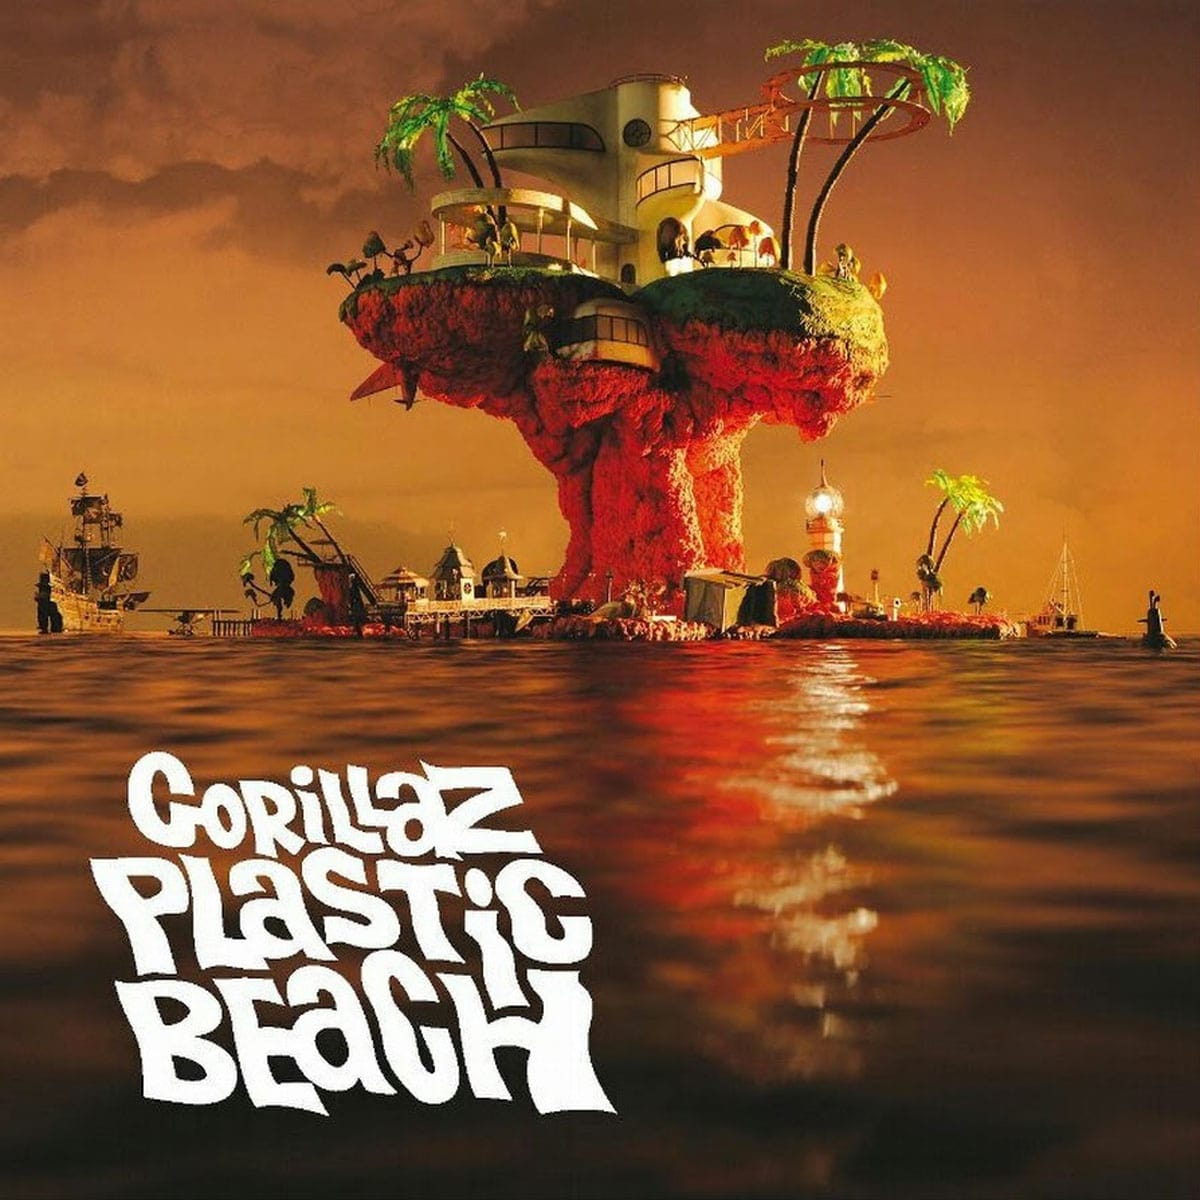 Gorila de praia plástica (2010)